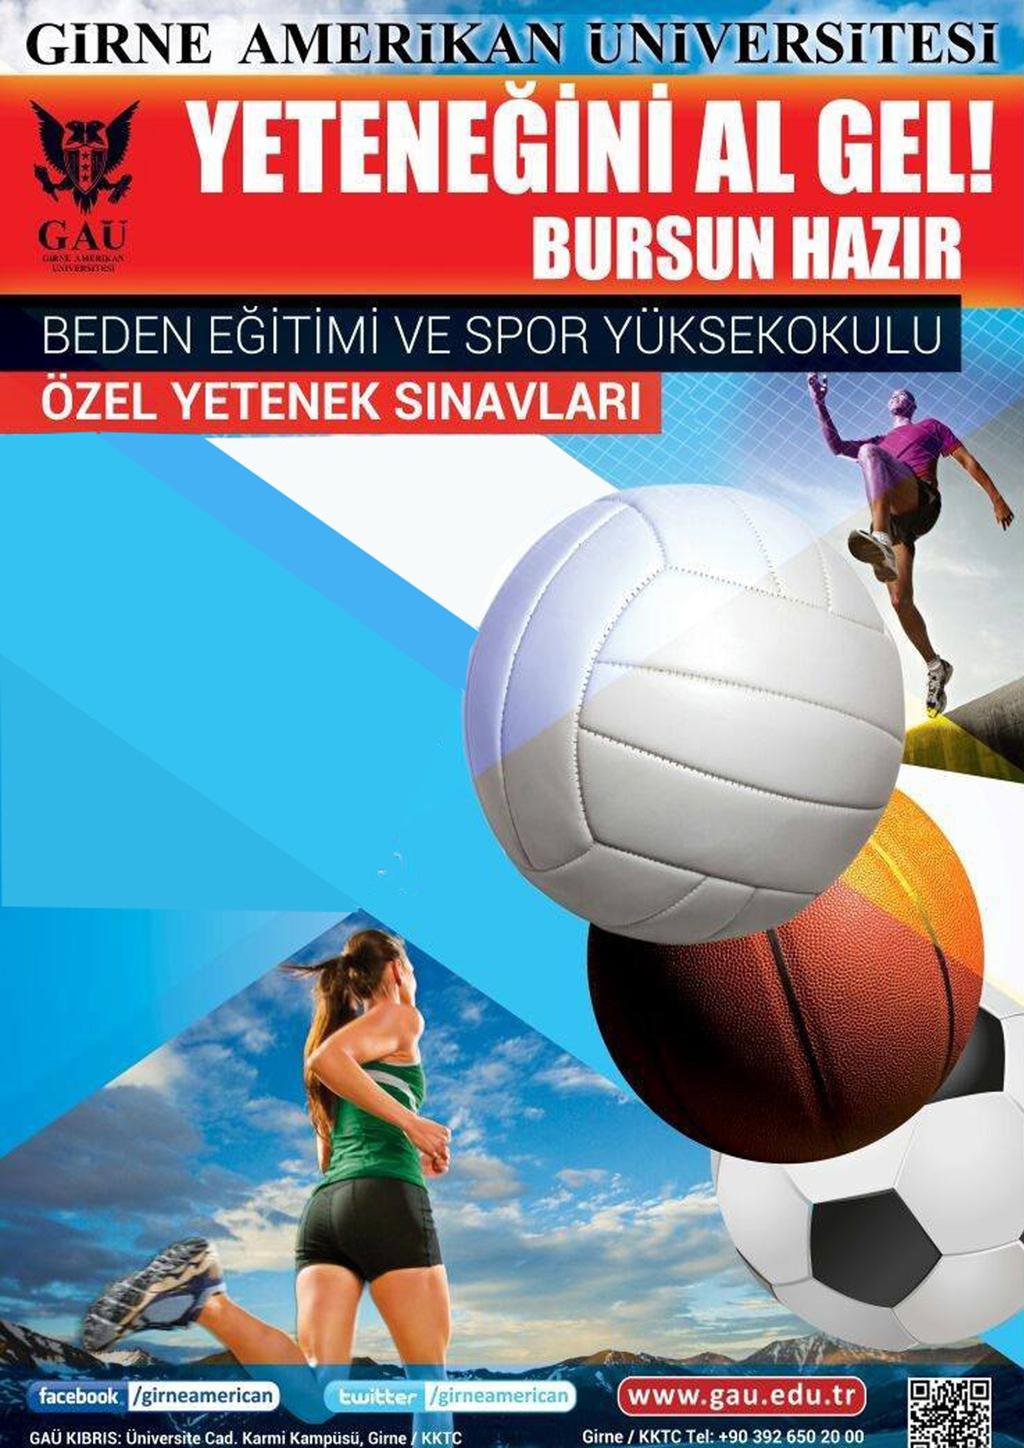 GİRNE AMERİKAN ÜNİVERSİTESİ YETENEKLİYSEN..! www.spor.gau.edu.